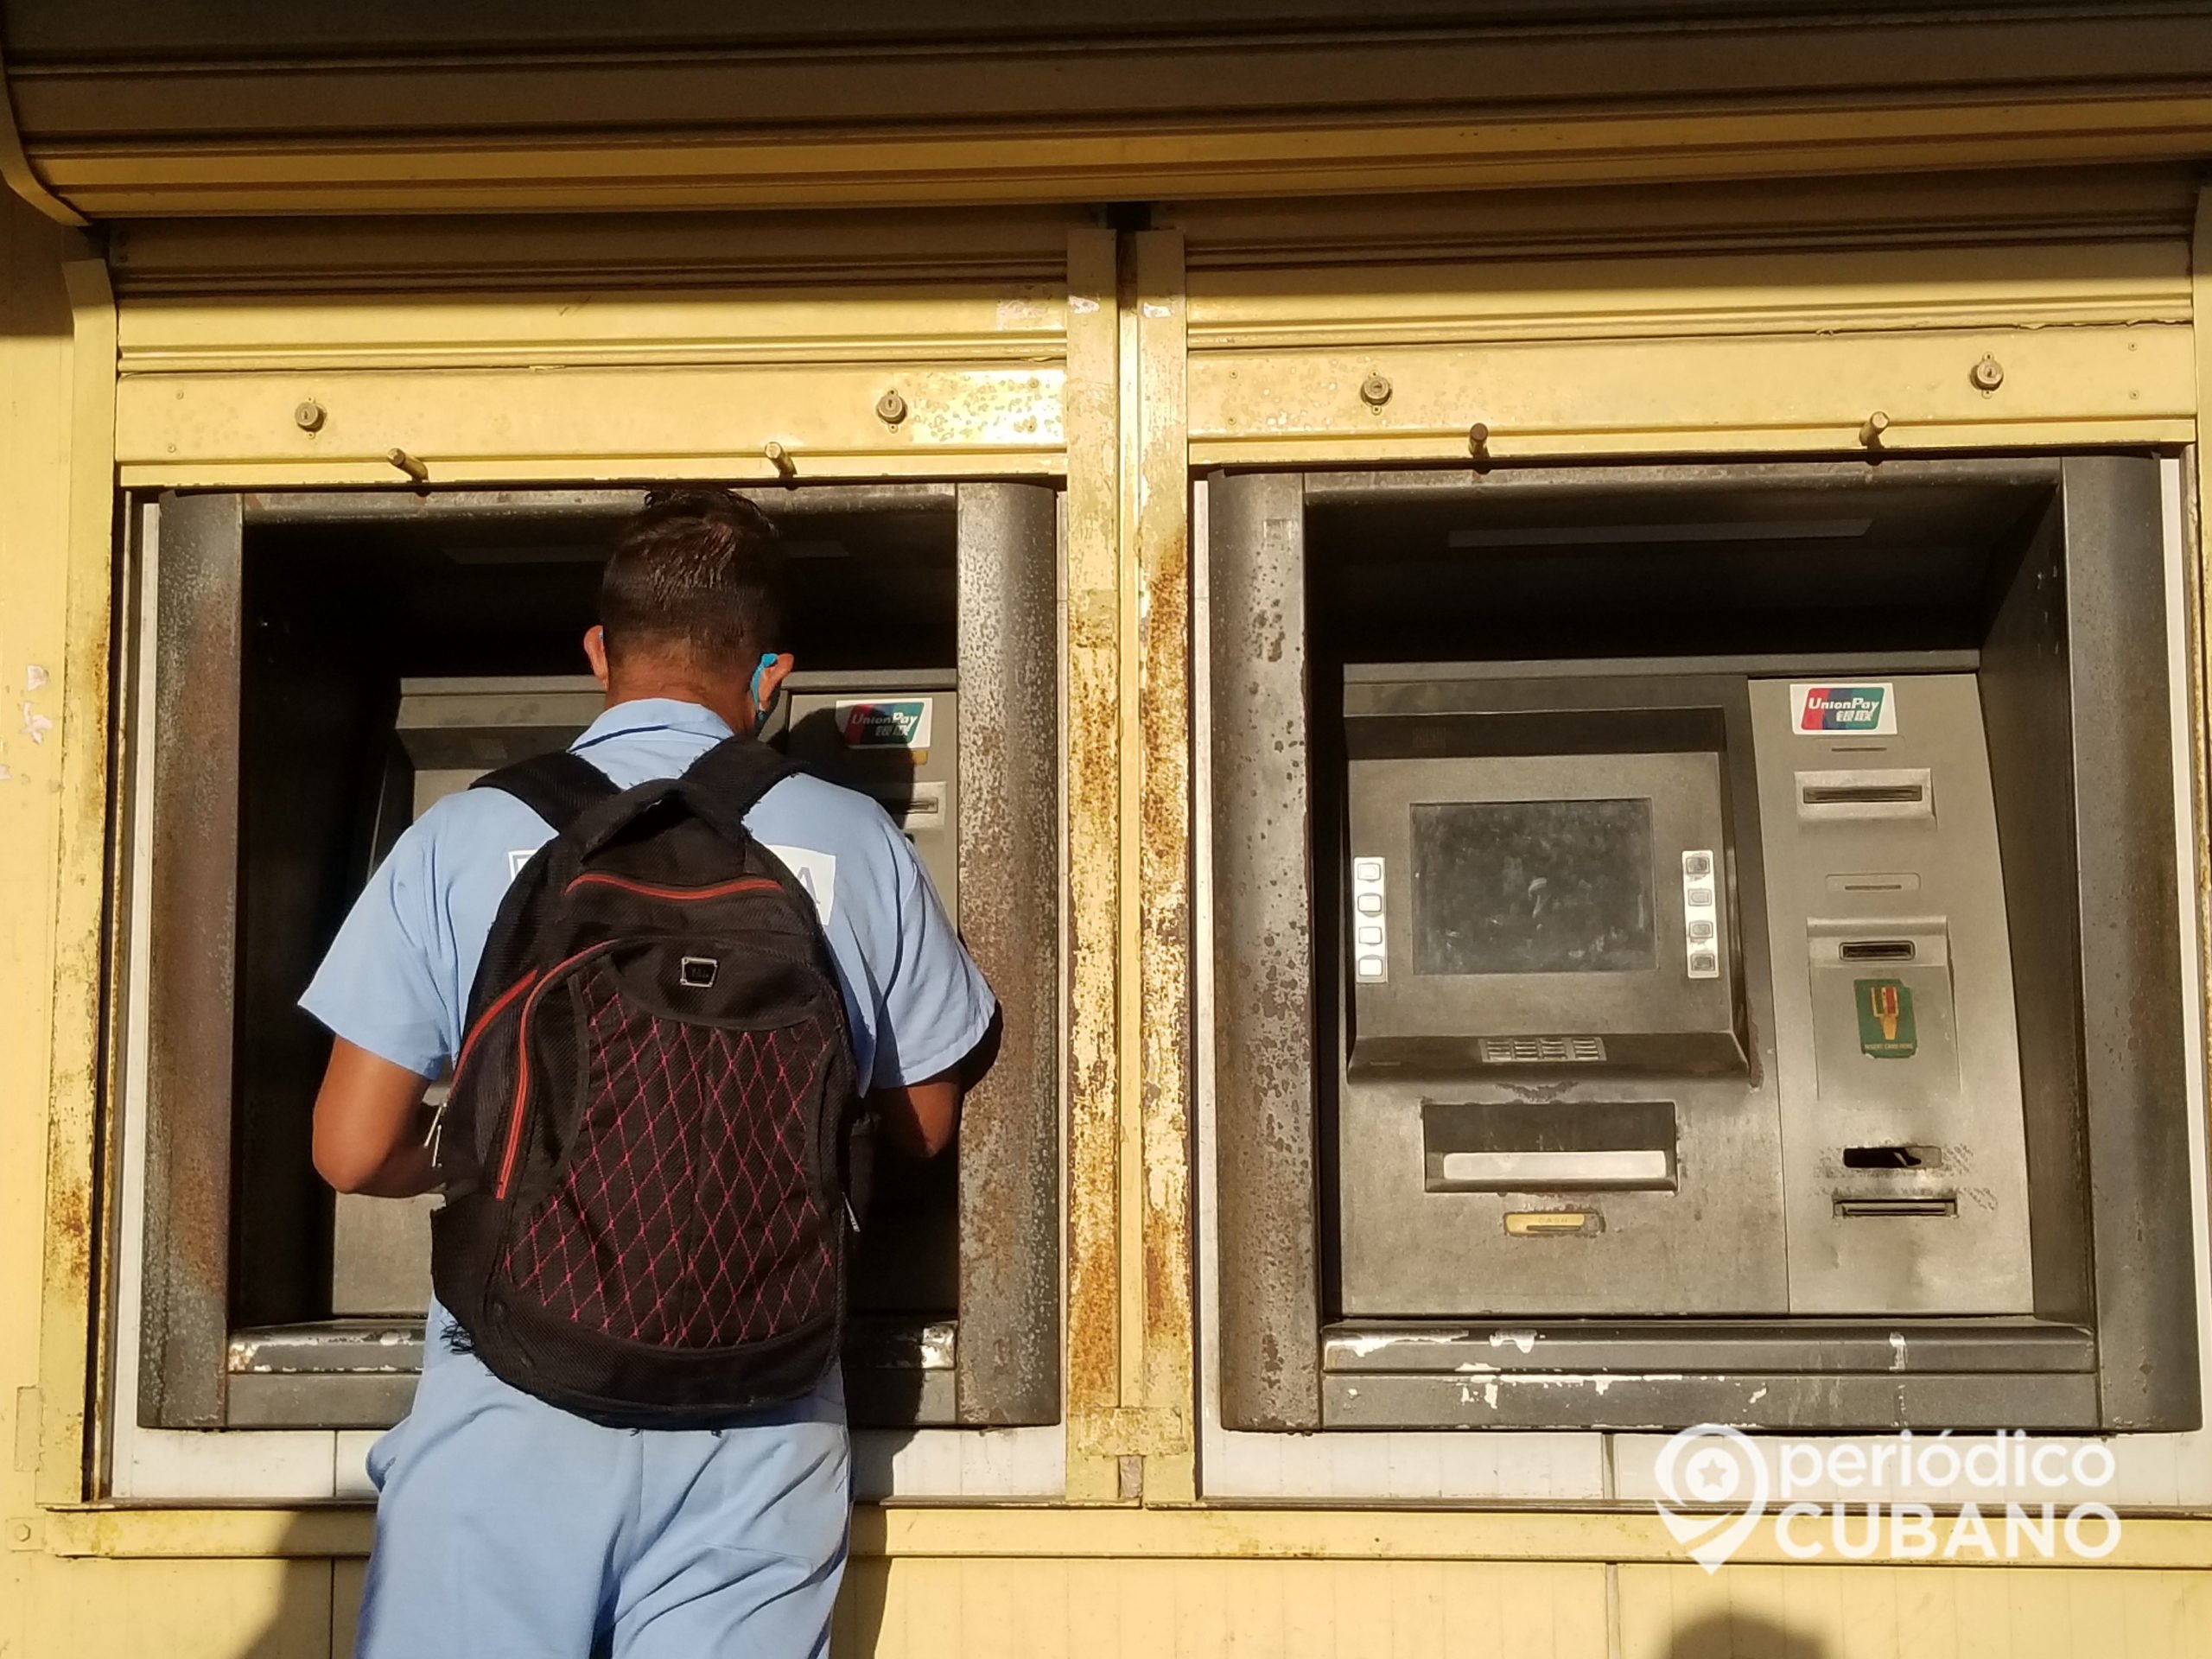 Banco Central de Cuba habilita la compra de dólares en cajeros automáticos